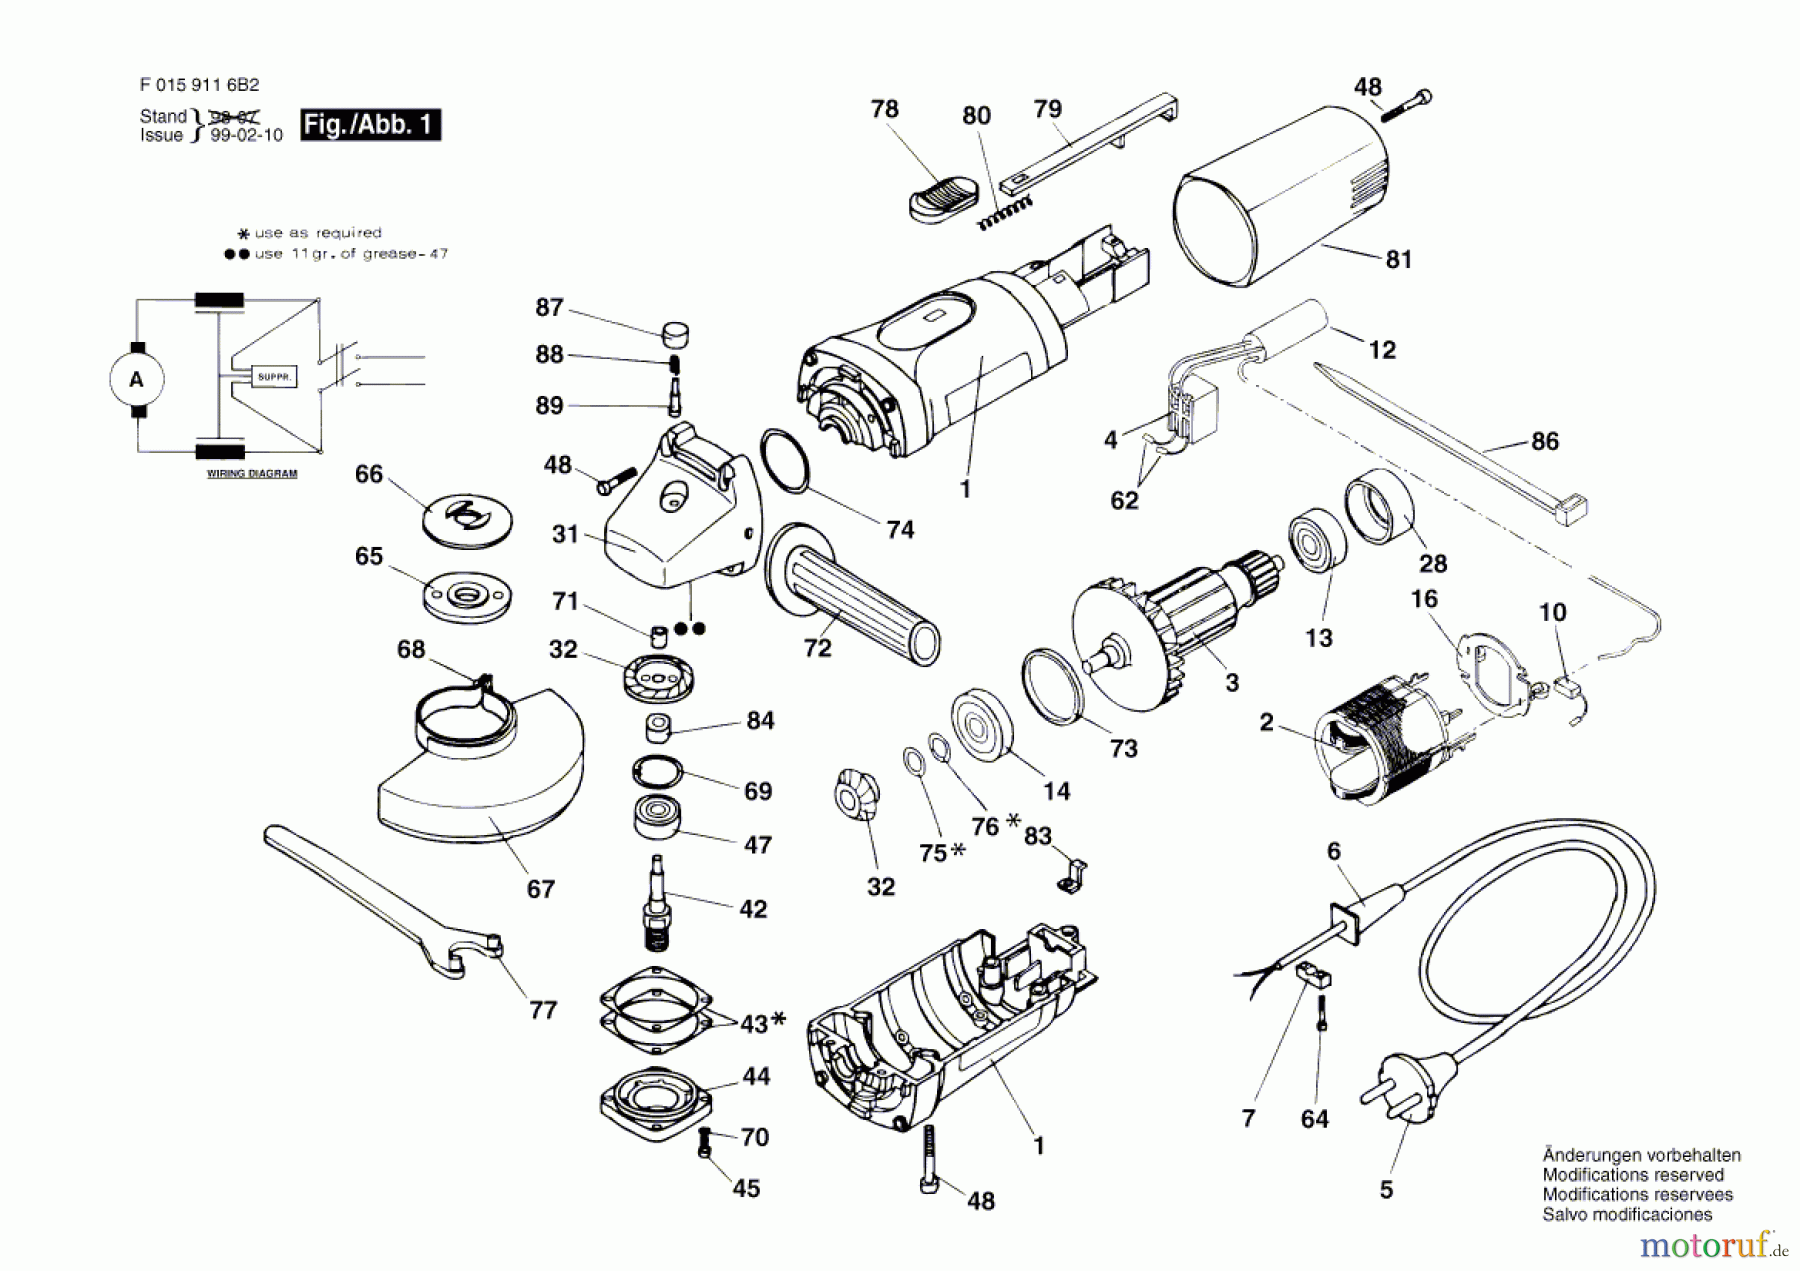  Bosch Werkzeug Hw-Winkelschleifer 9116 H2 Seite 1